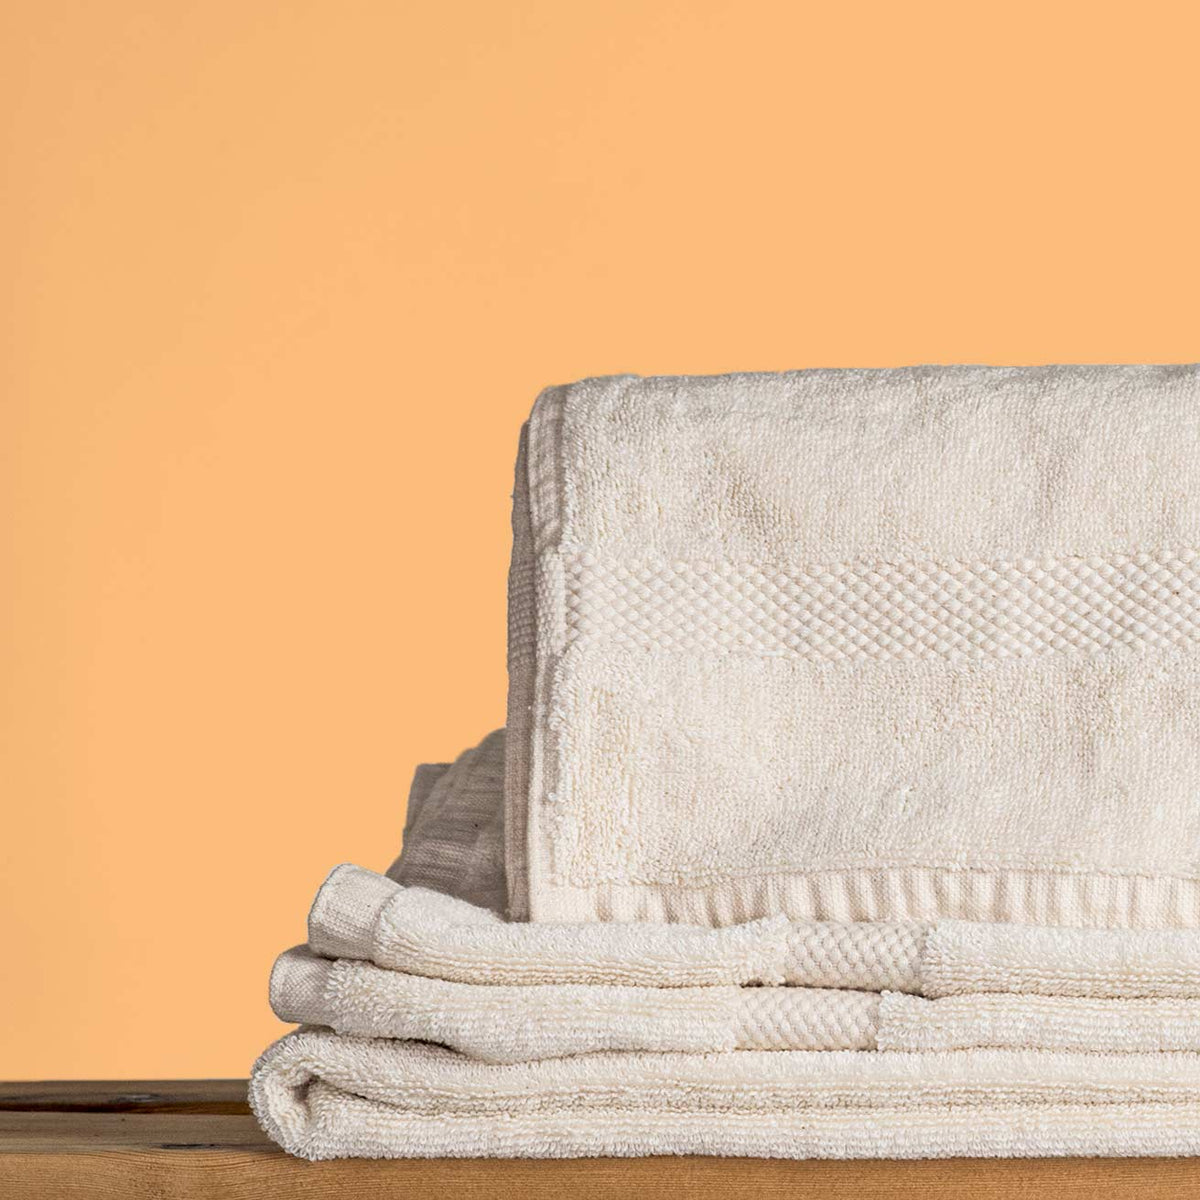 Home SPA bath towel set - Organic Towel Set - Washed Linen Bath Towels -  Set of Organic Towels - Sauna Linen Towels - Natural Linen Towel